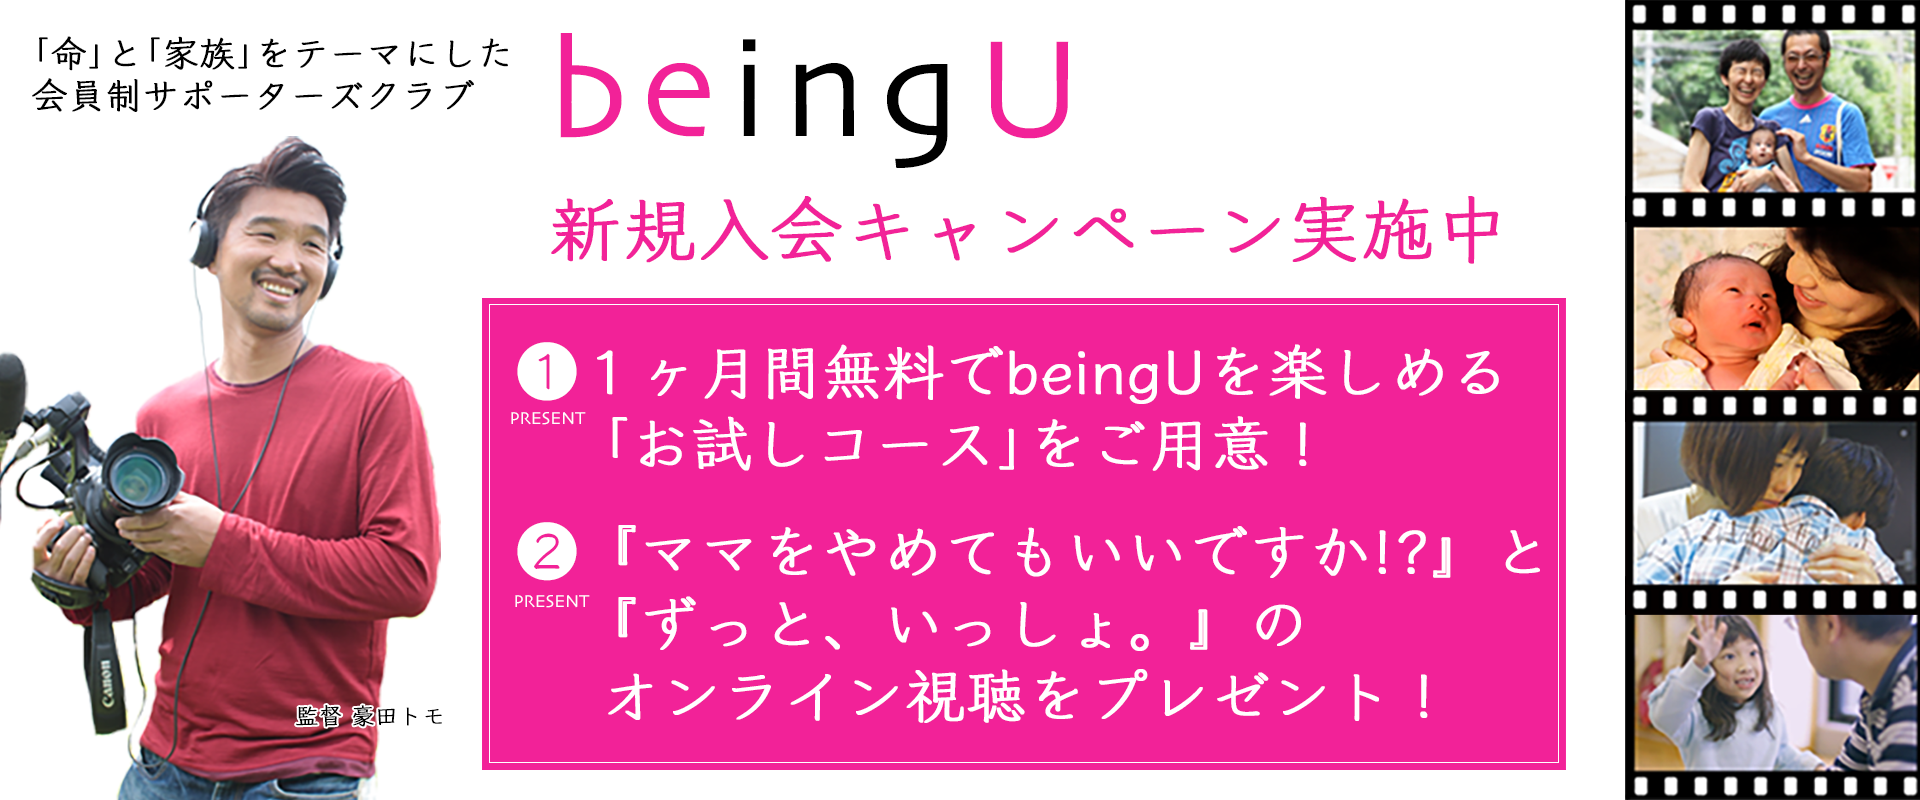 top-beingU (1).png